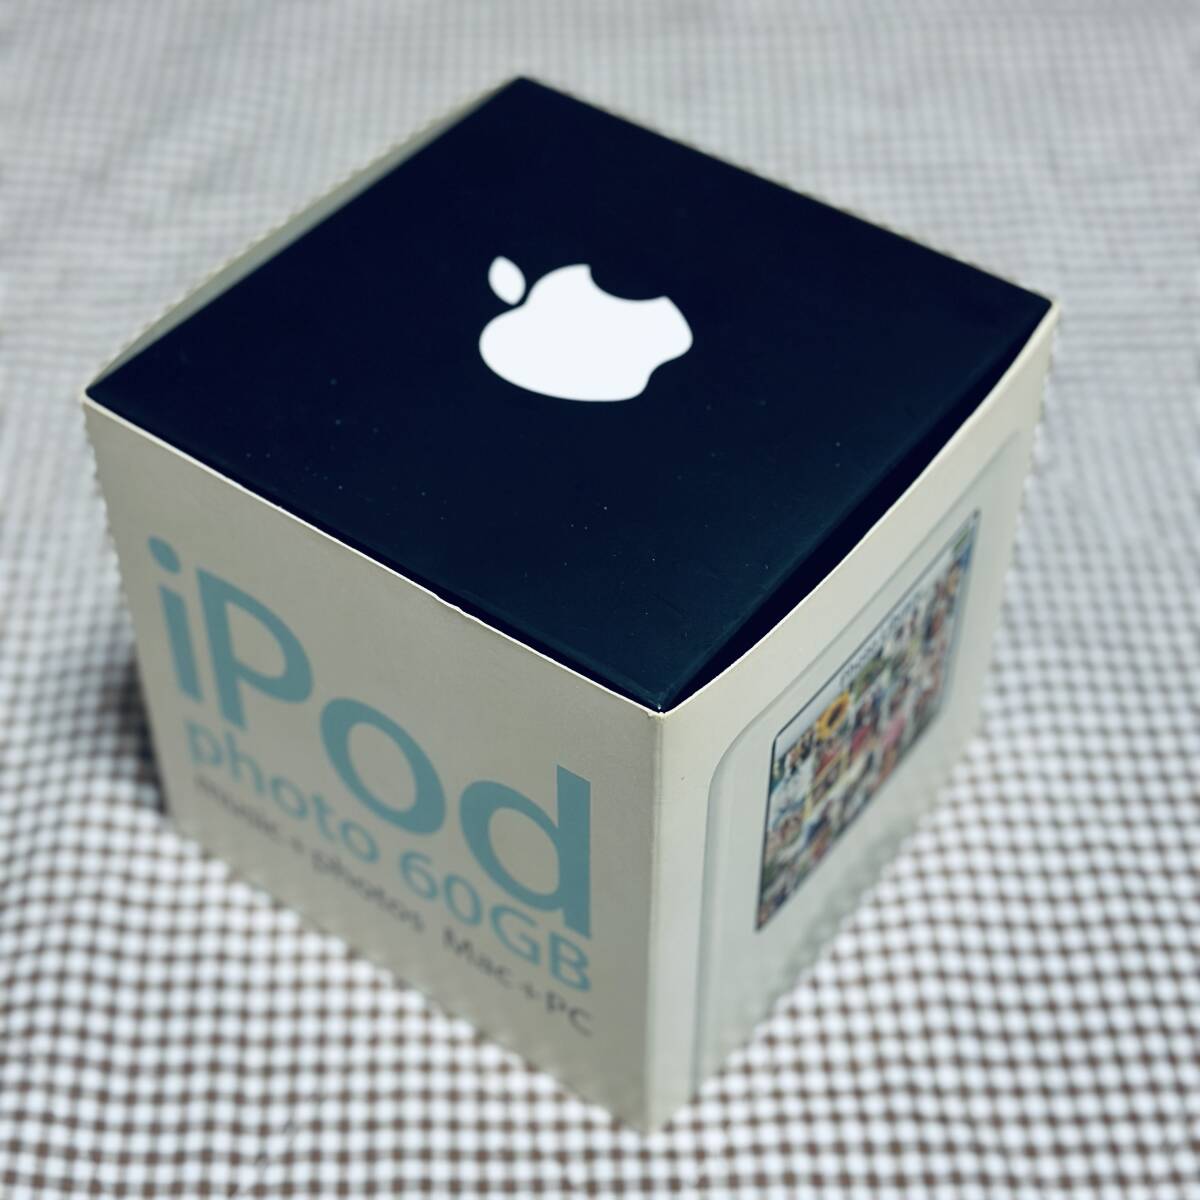 Apple iPod photo 60GB + おまけiPodソックス_画像1